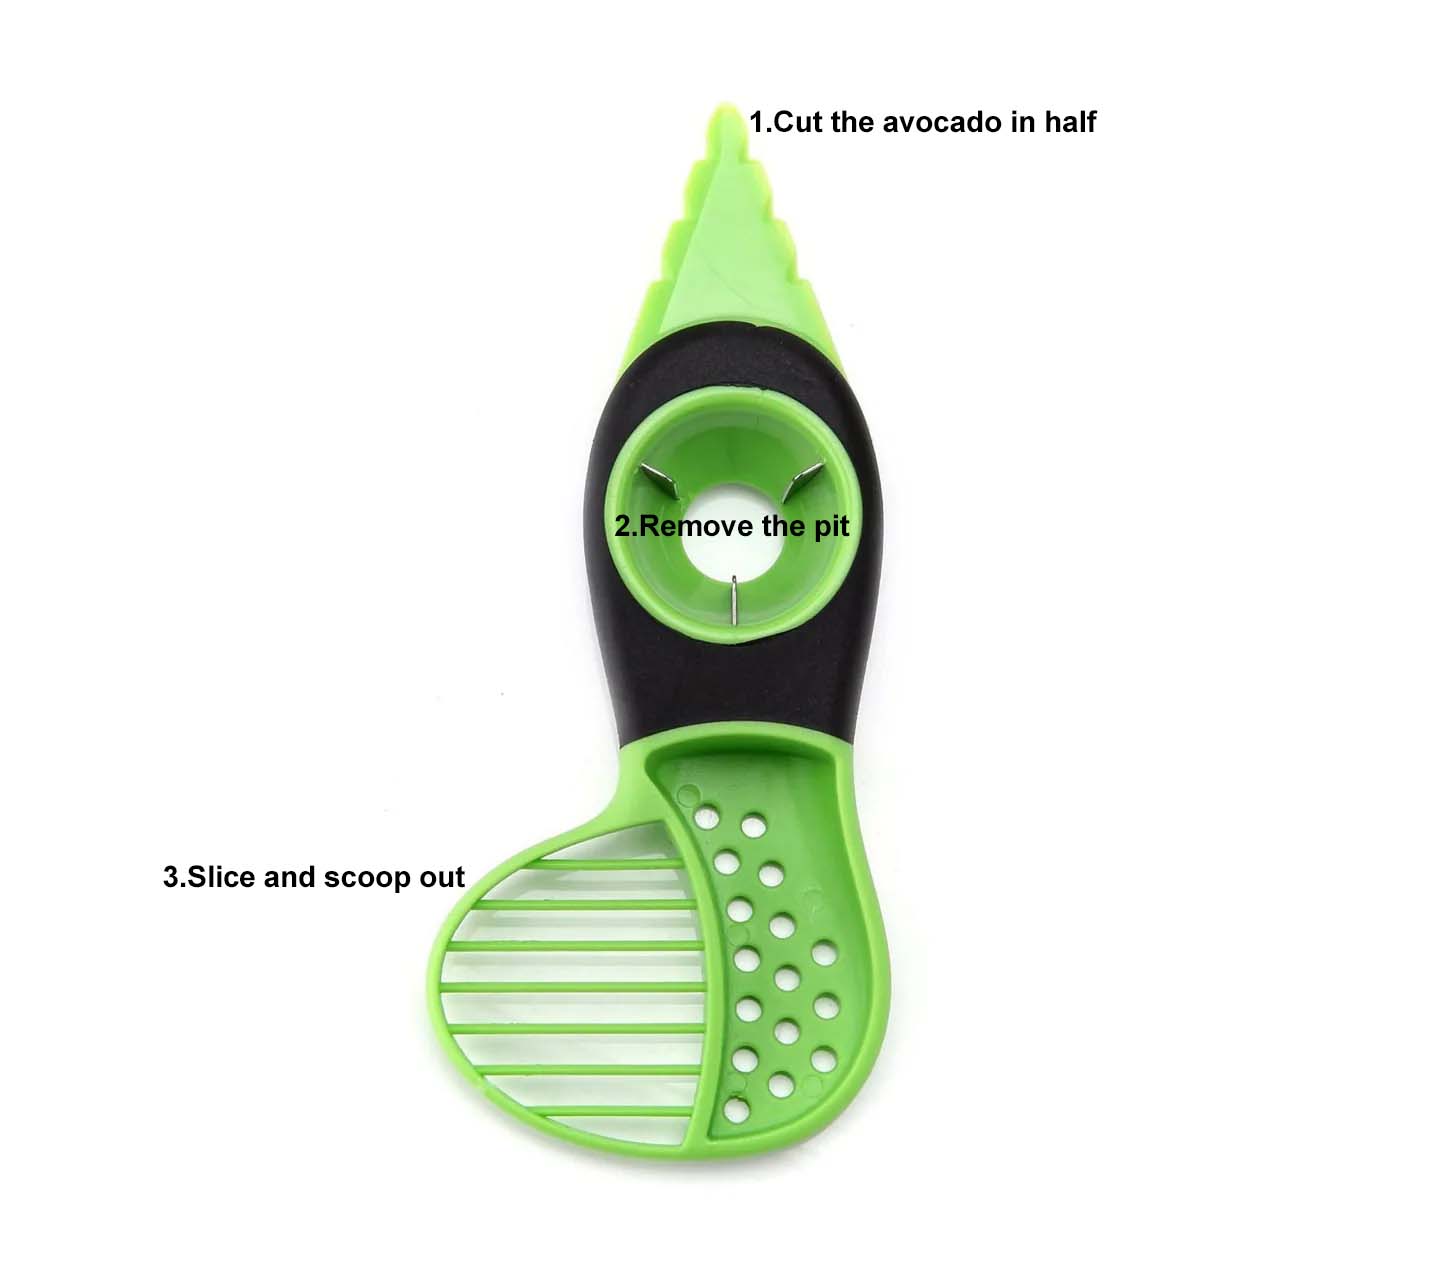 Cortadora de aguacate 3 en 1 Cuisinox, verde, cuchillo multifuncional 